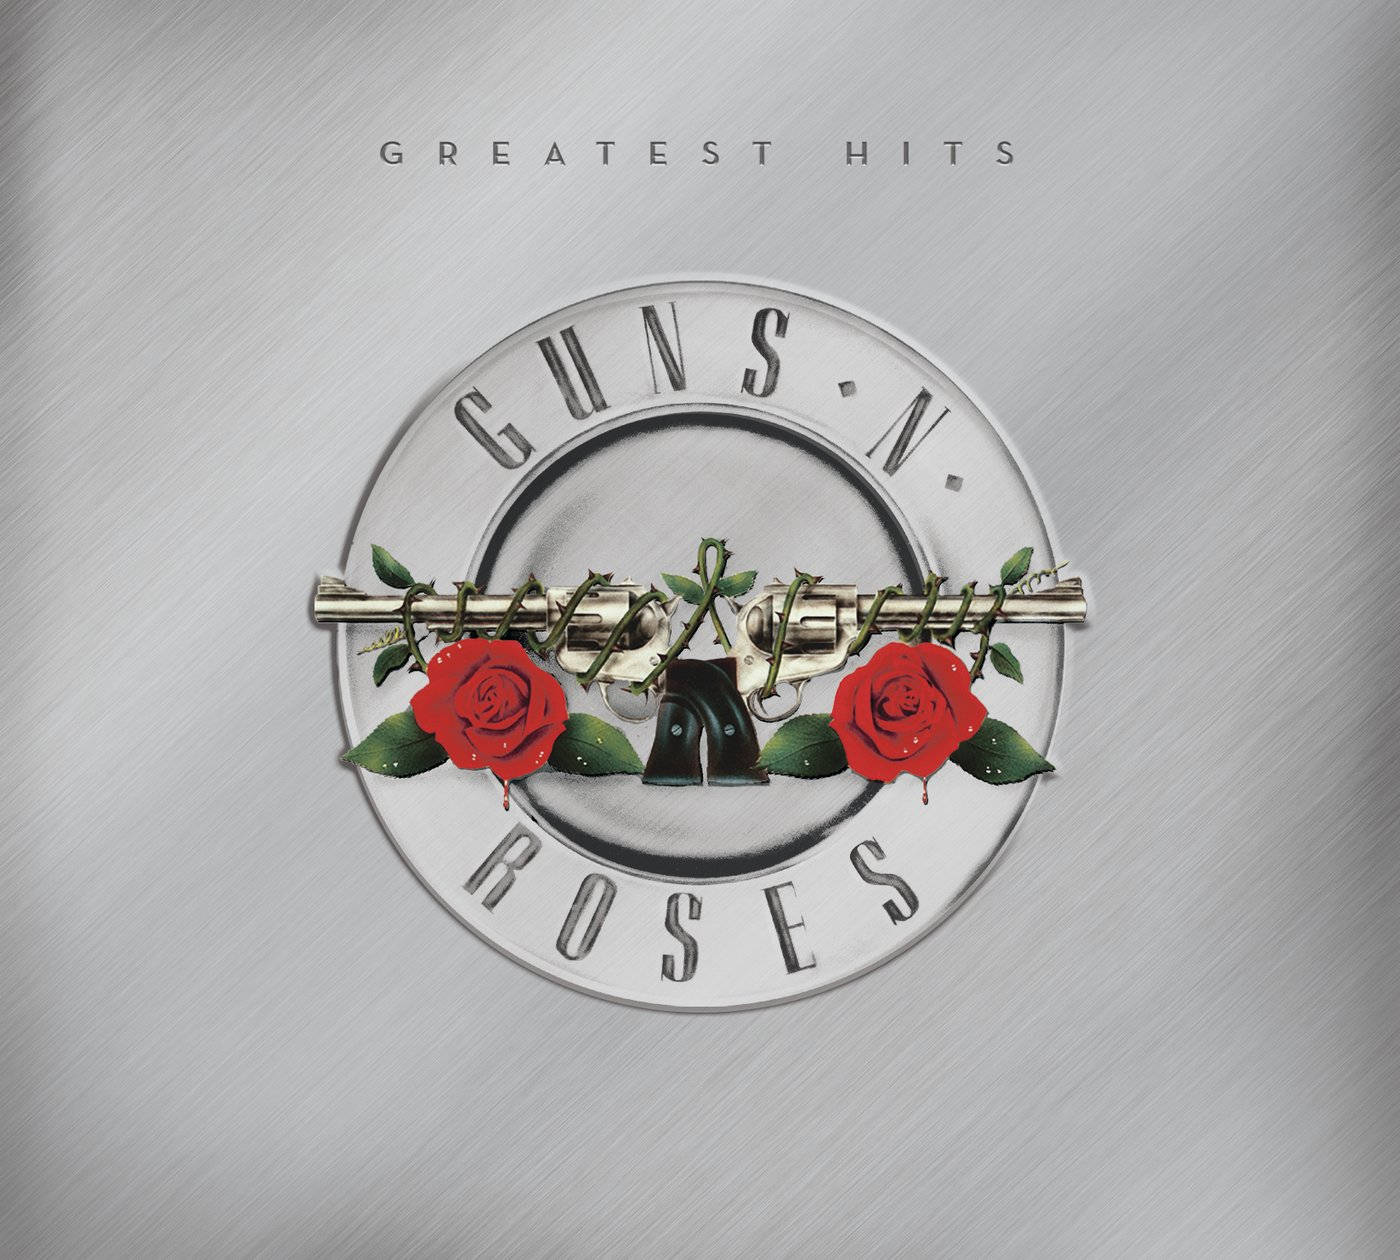 Sammenstilling album Guns N Roses største hits Wallpaper